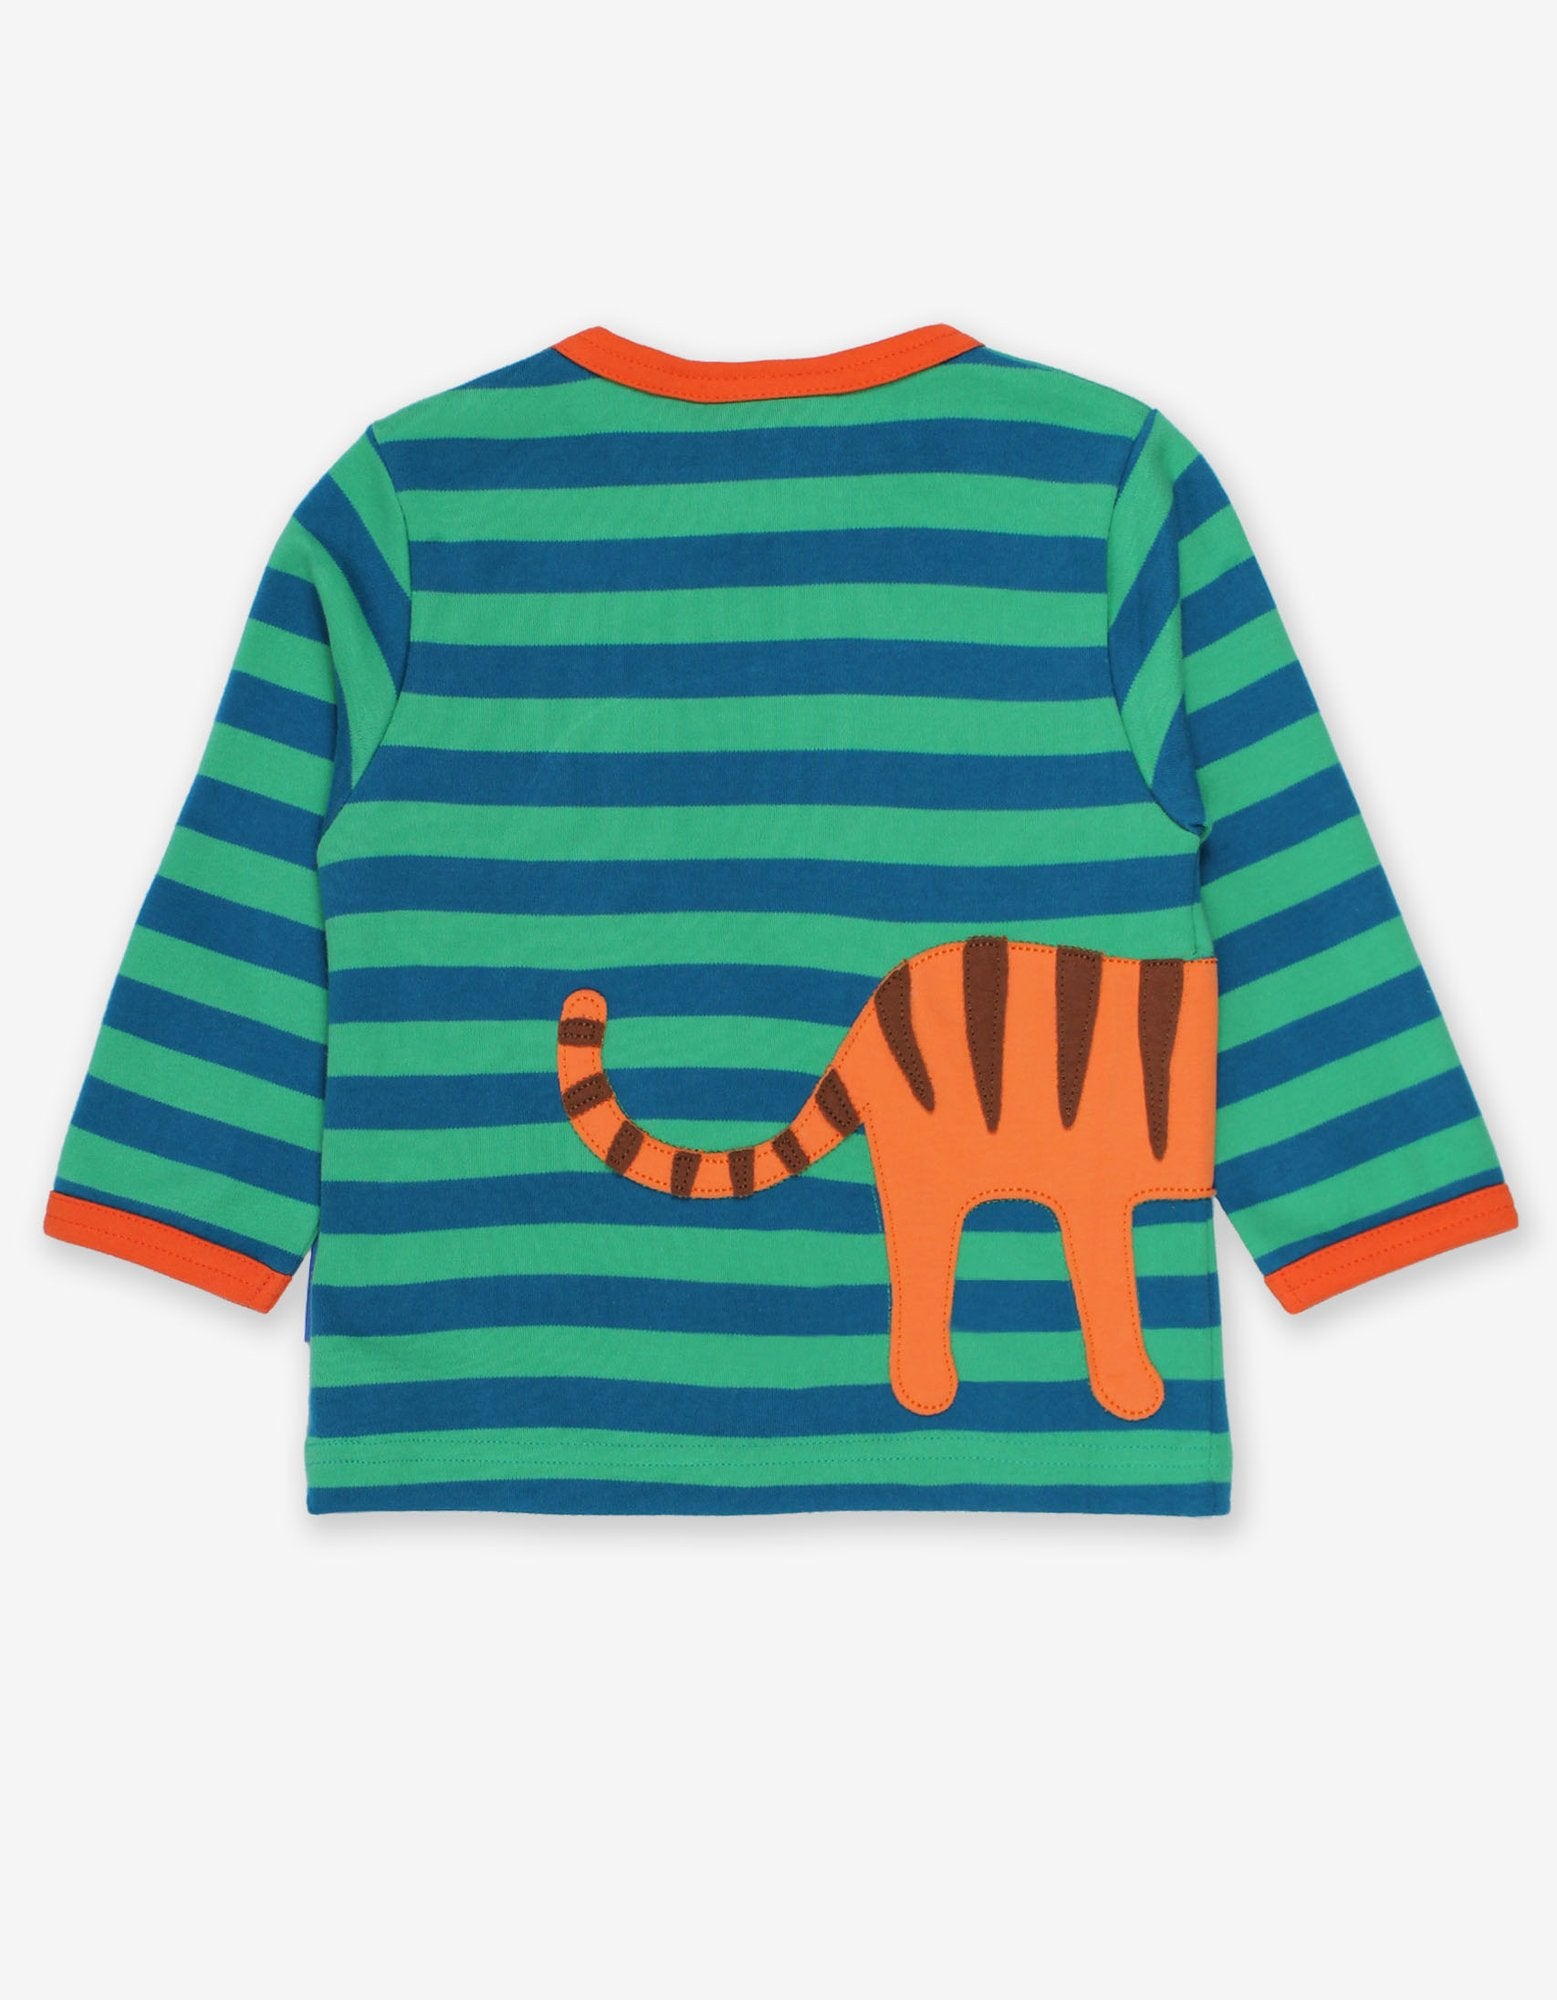 Toby Tiger Organic Born Free Tiger Applique T-Shirt*